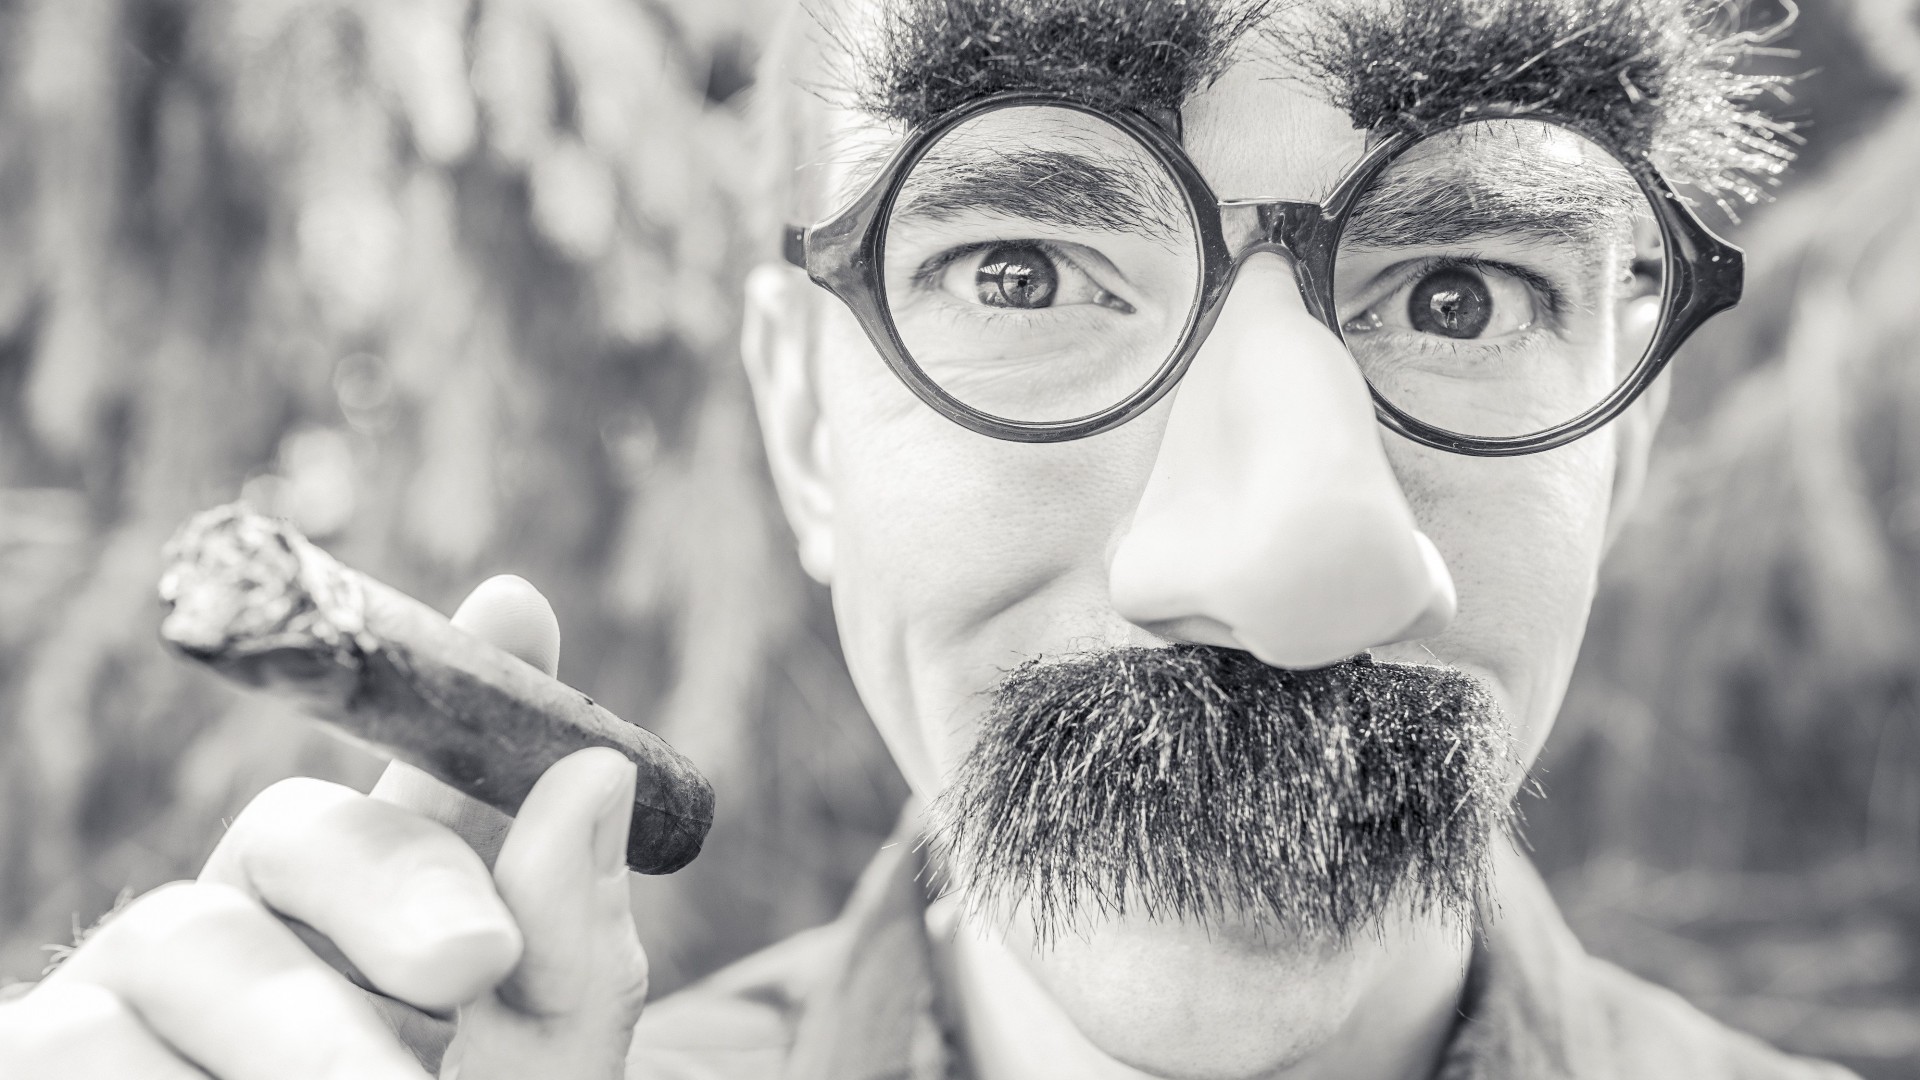 Groucho Glasses Man Wallpaper for Desktop 1920x1080